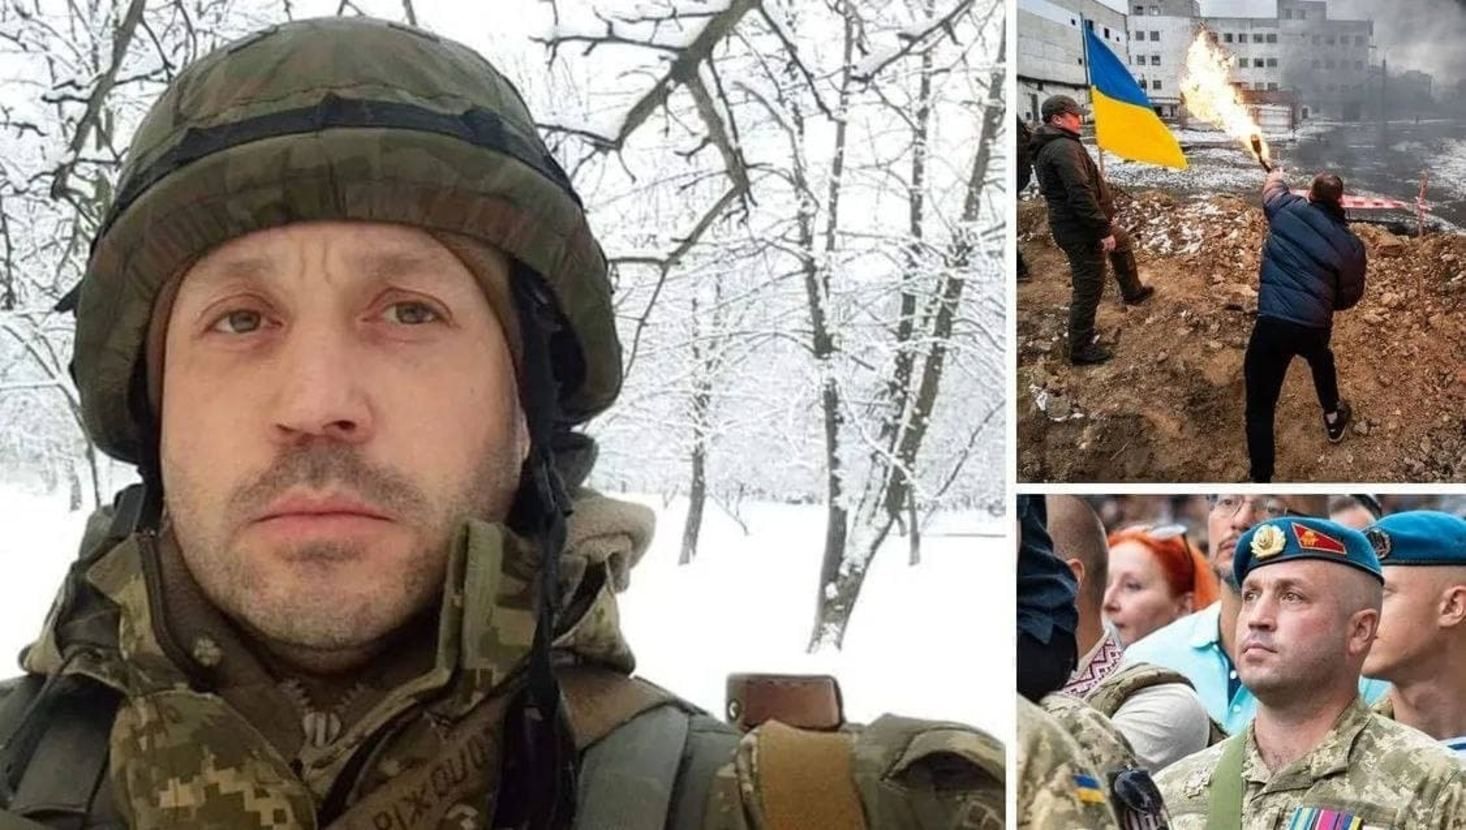 "Киборг" двое суток добирался из Брюсселя, чтобы снова защищать Украину: он уже в рядах ВСУ